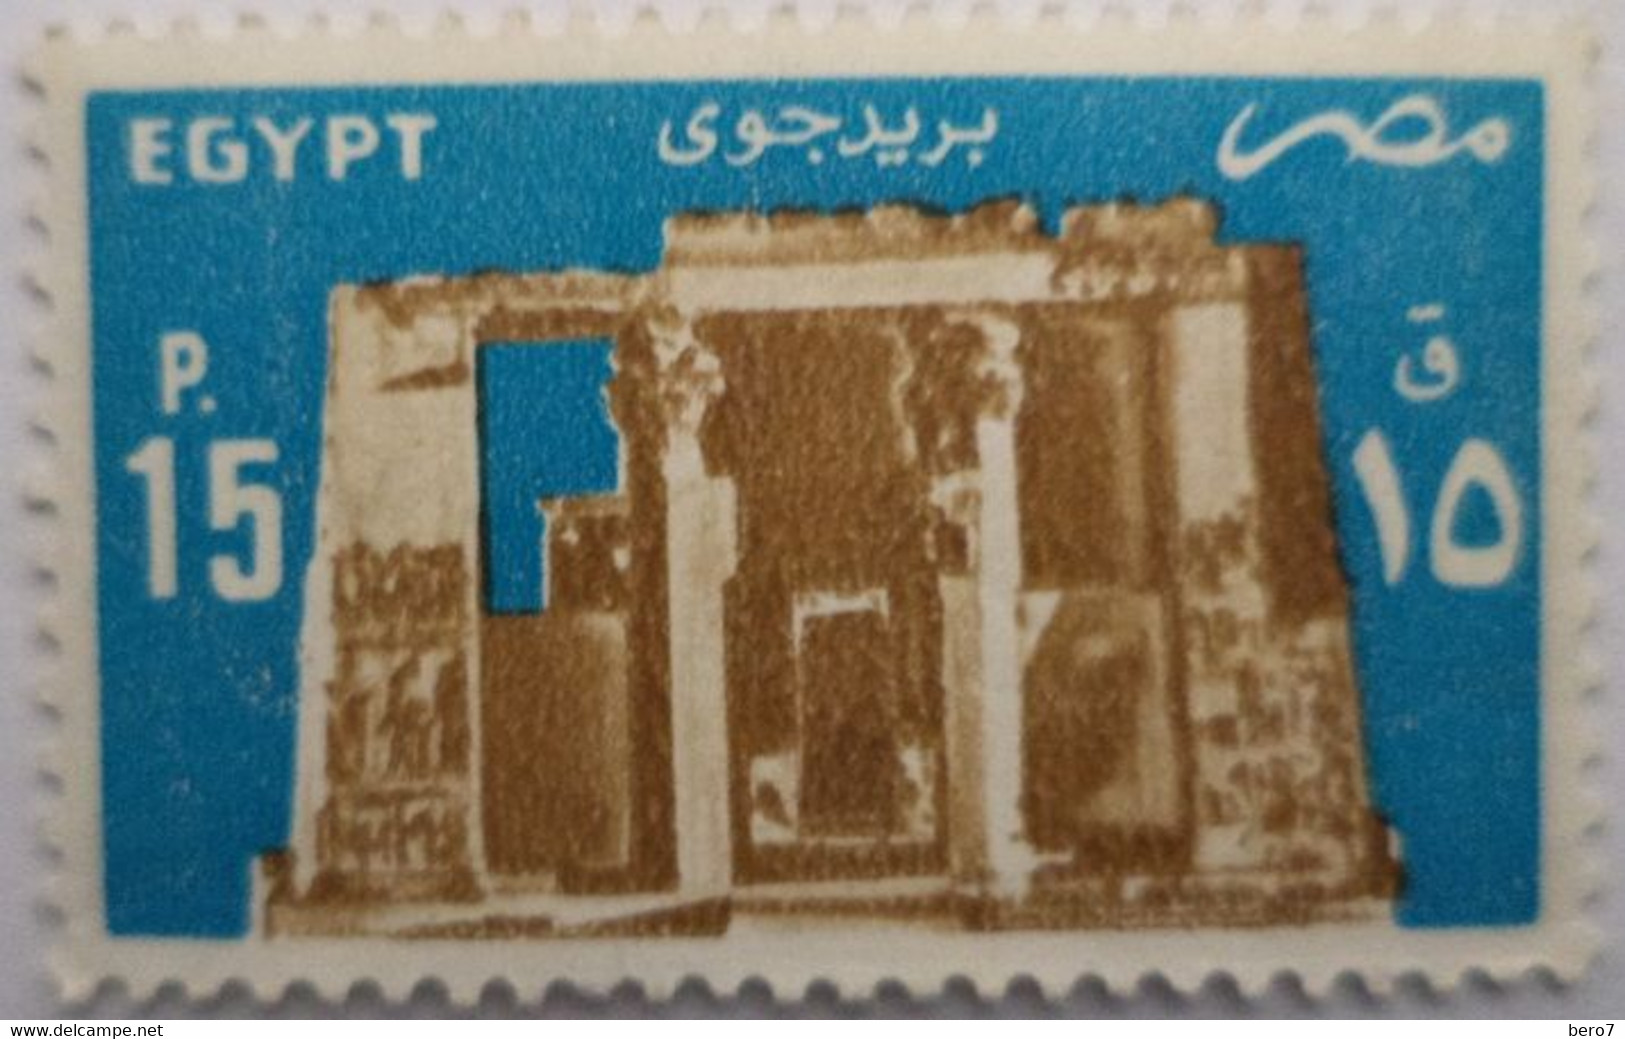 EGYPT- 1985 - Temple Of Horus, Edfu [MNH] (Egypte) (Egitto) (Ägypten) - Gebraucht